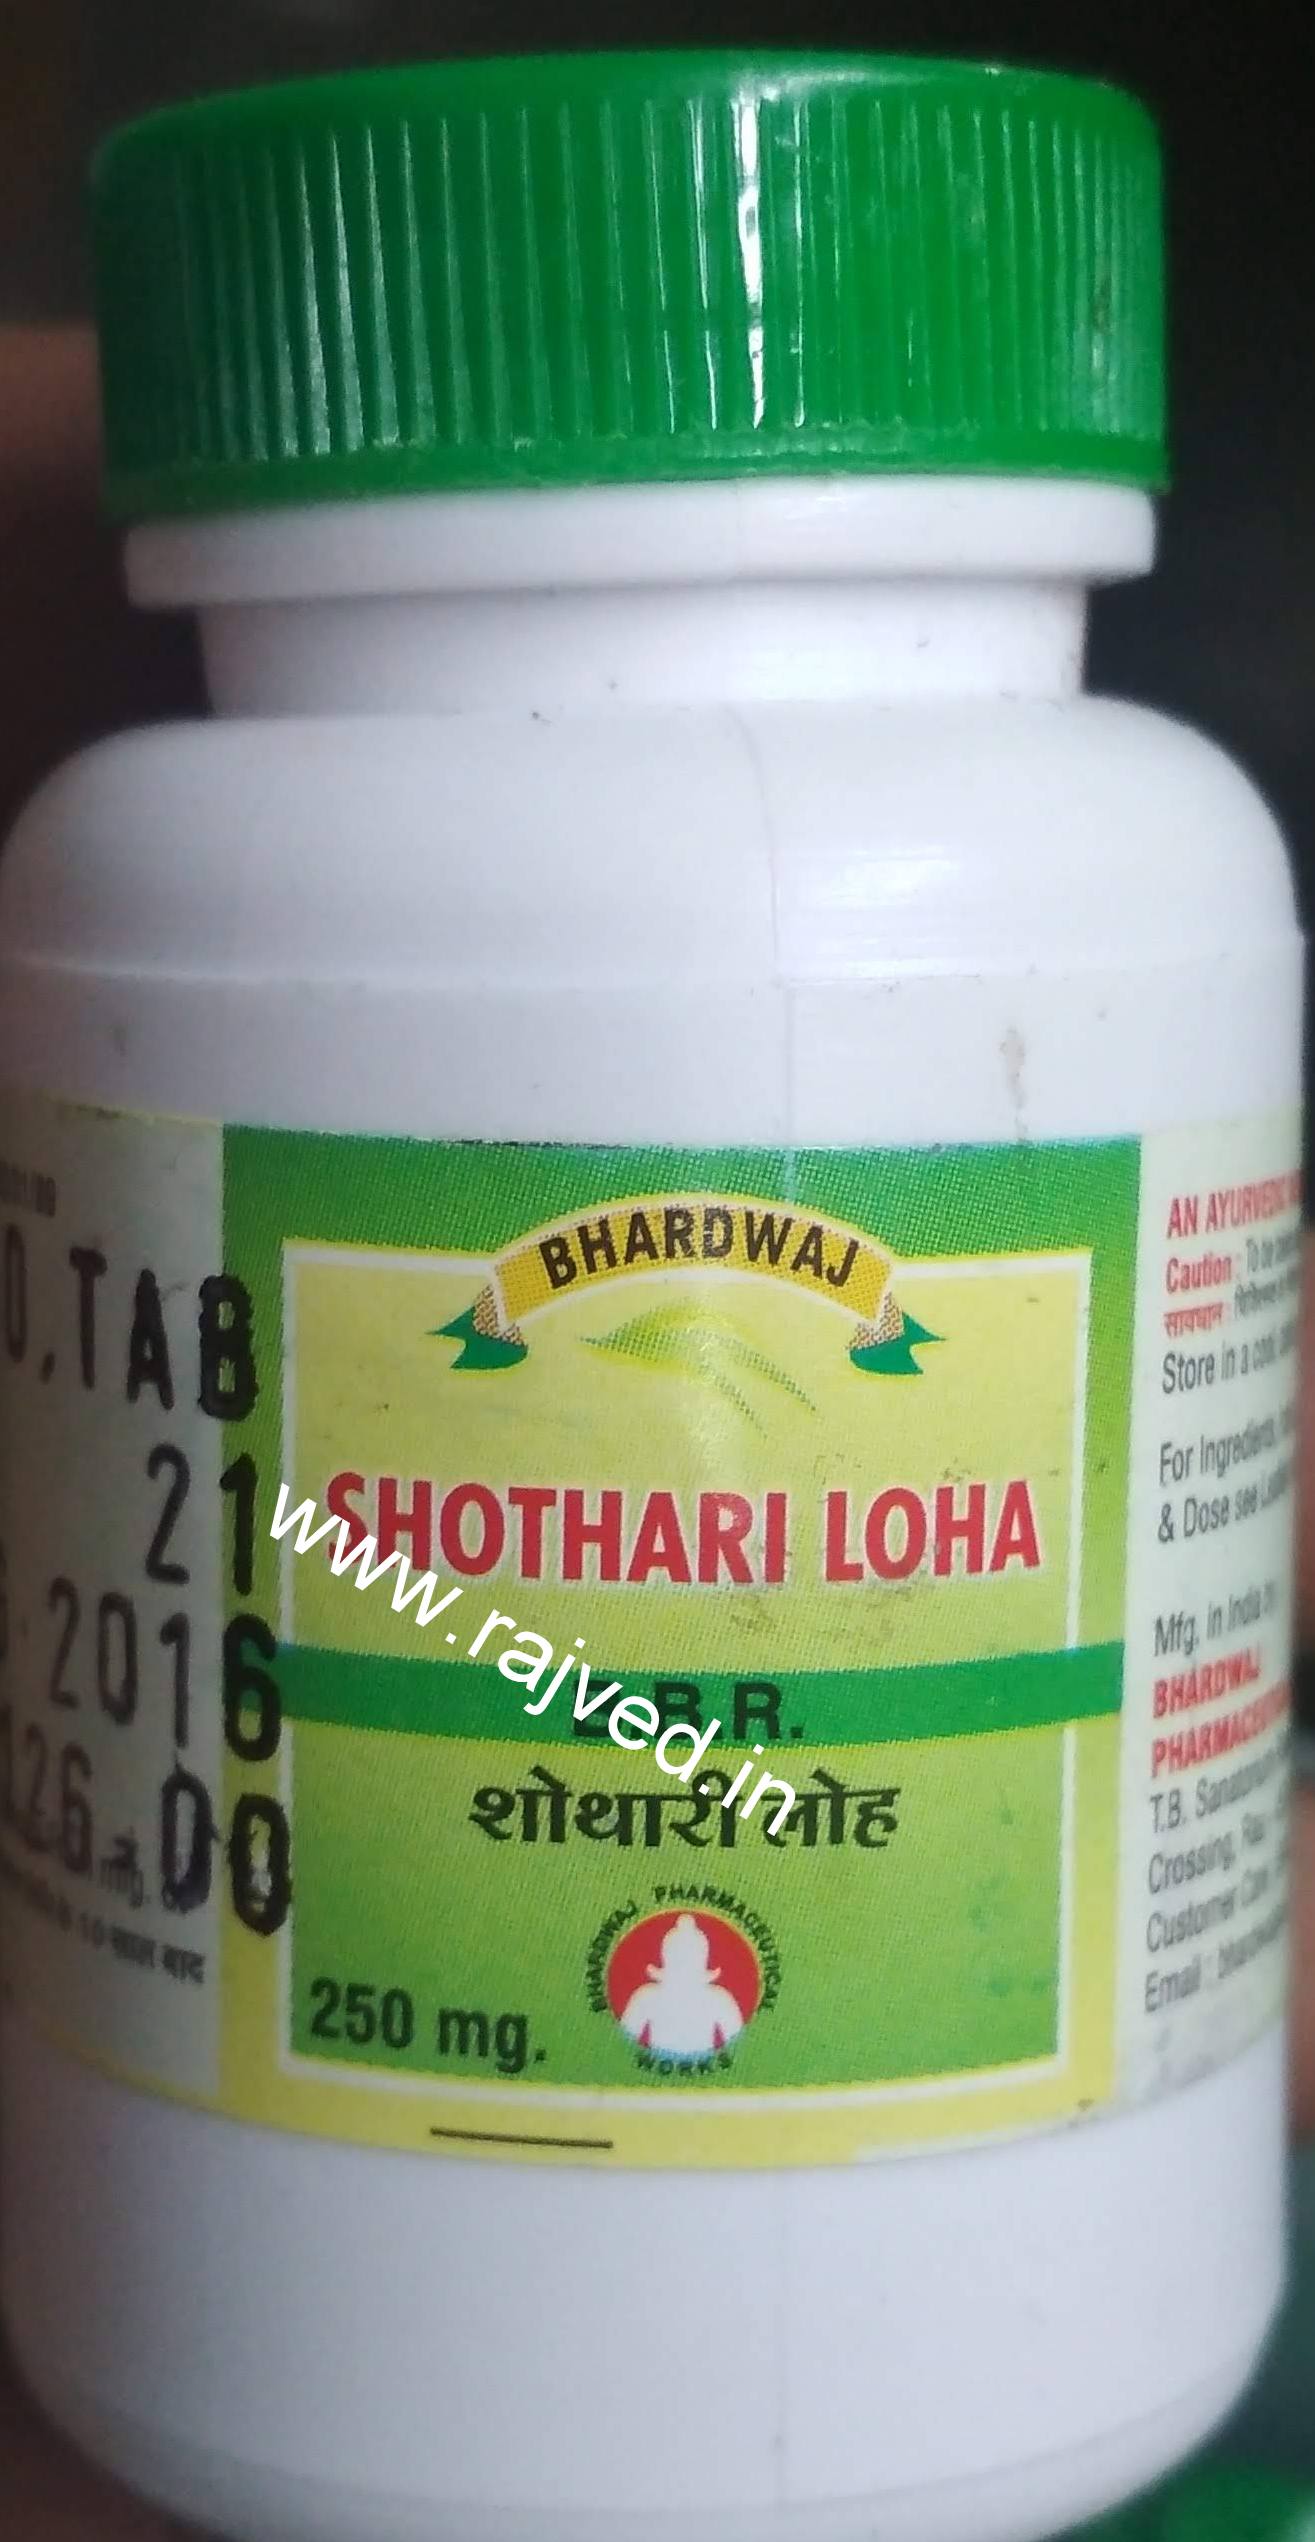 shothari loha 1kg upto 20% off bhardwaj pharmaceuticals indore